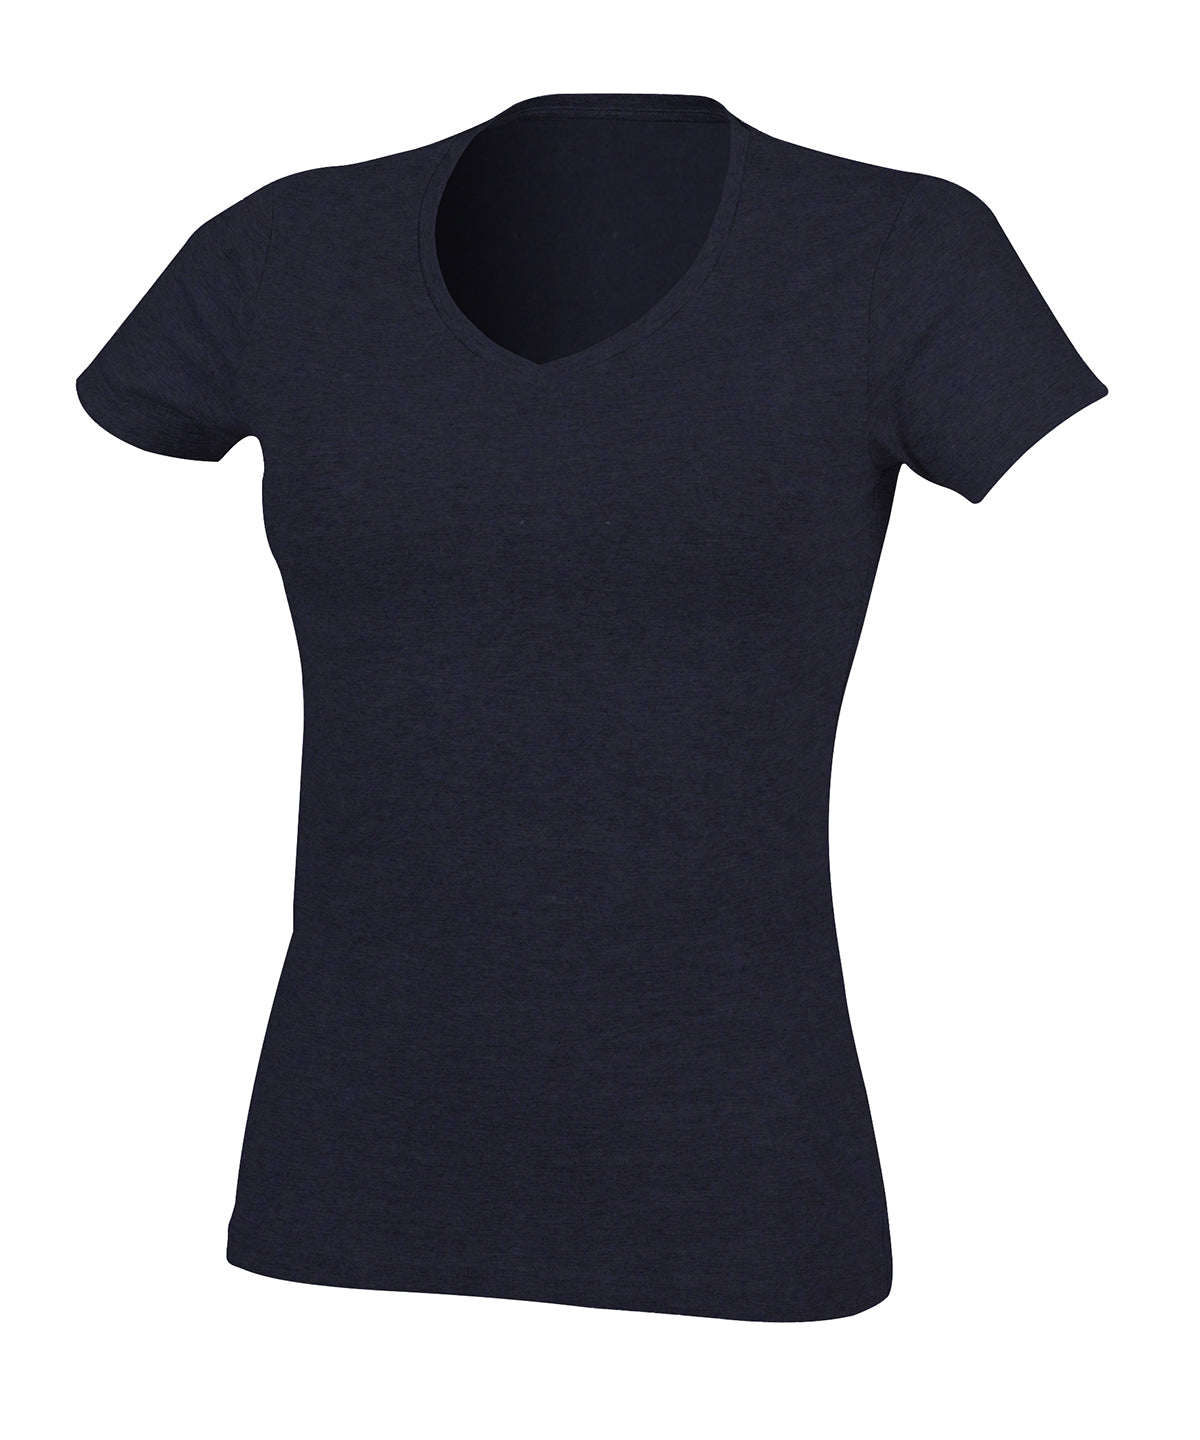 Stuttermabolir - Feel Good Women's Stretch V-neck T-shirt